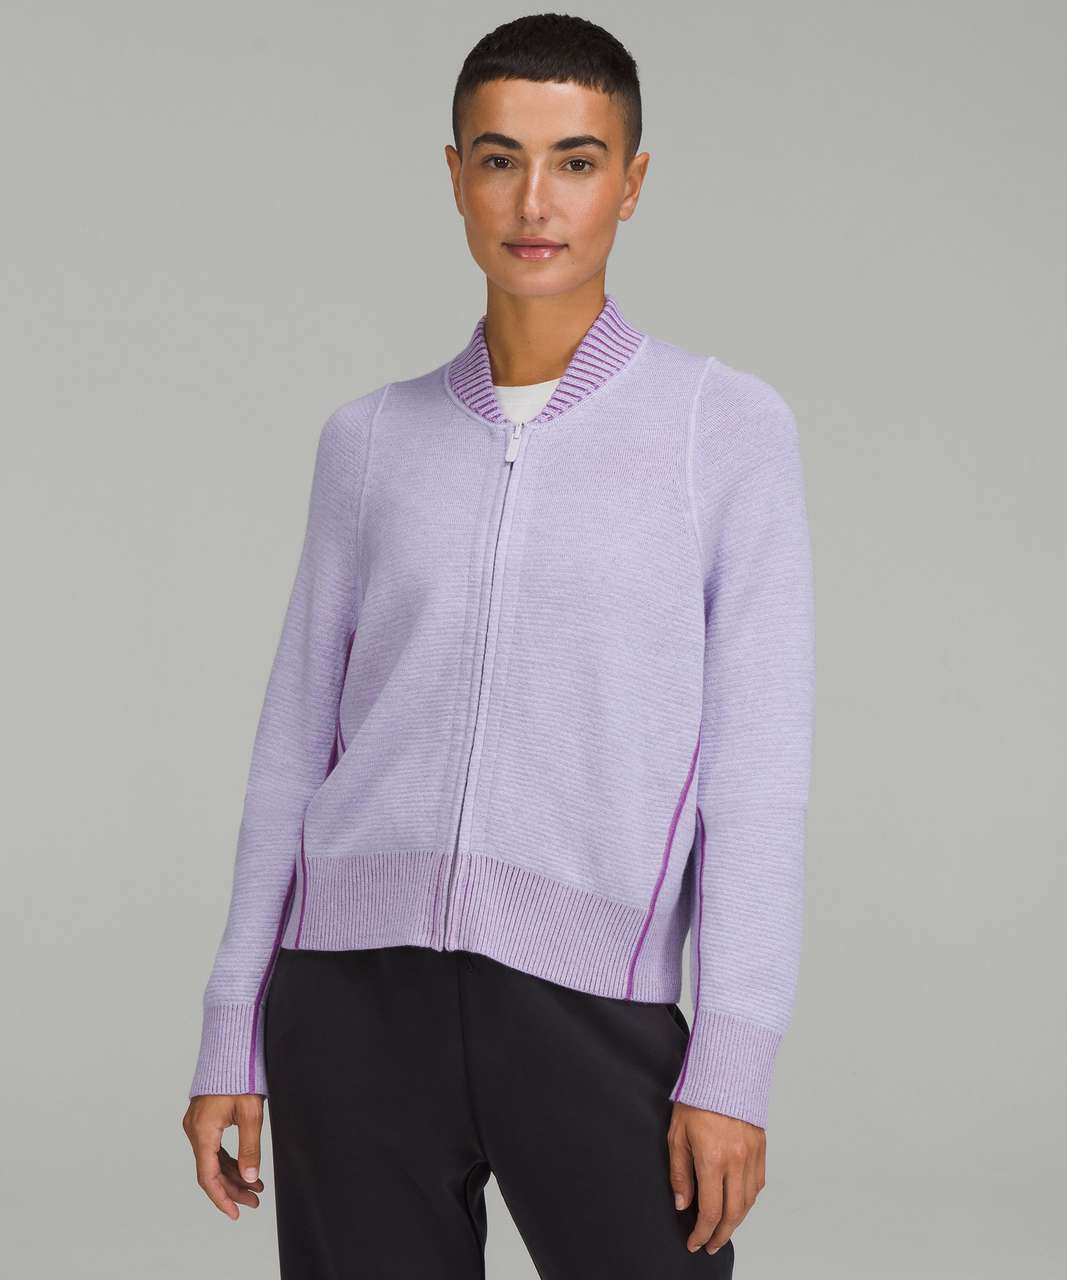 Lululemon Reversible Double-Knit Zip-Up Sweater - Faint Lavender 